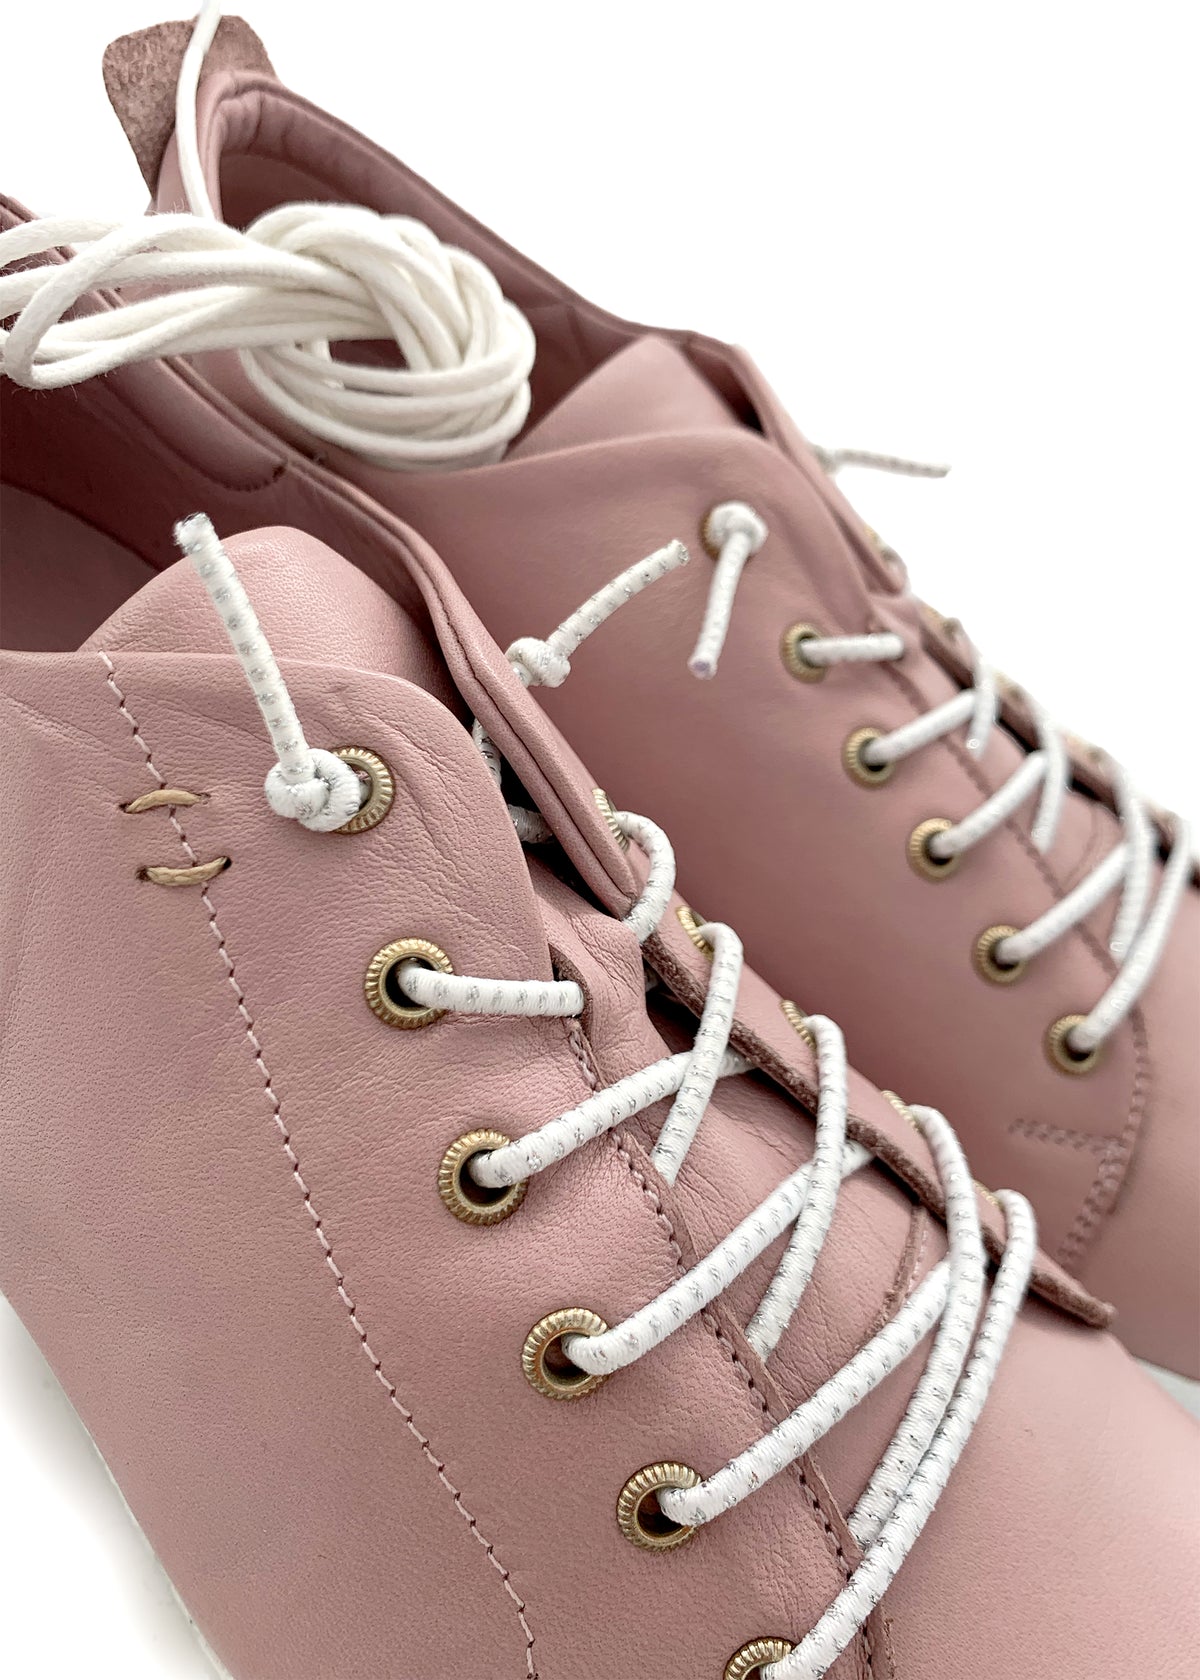 Låga sneakers - rosa läder, elastiska remmar